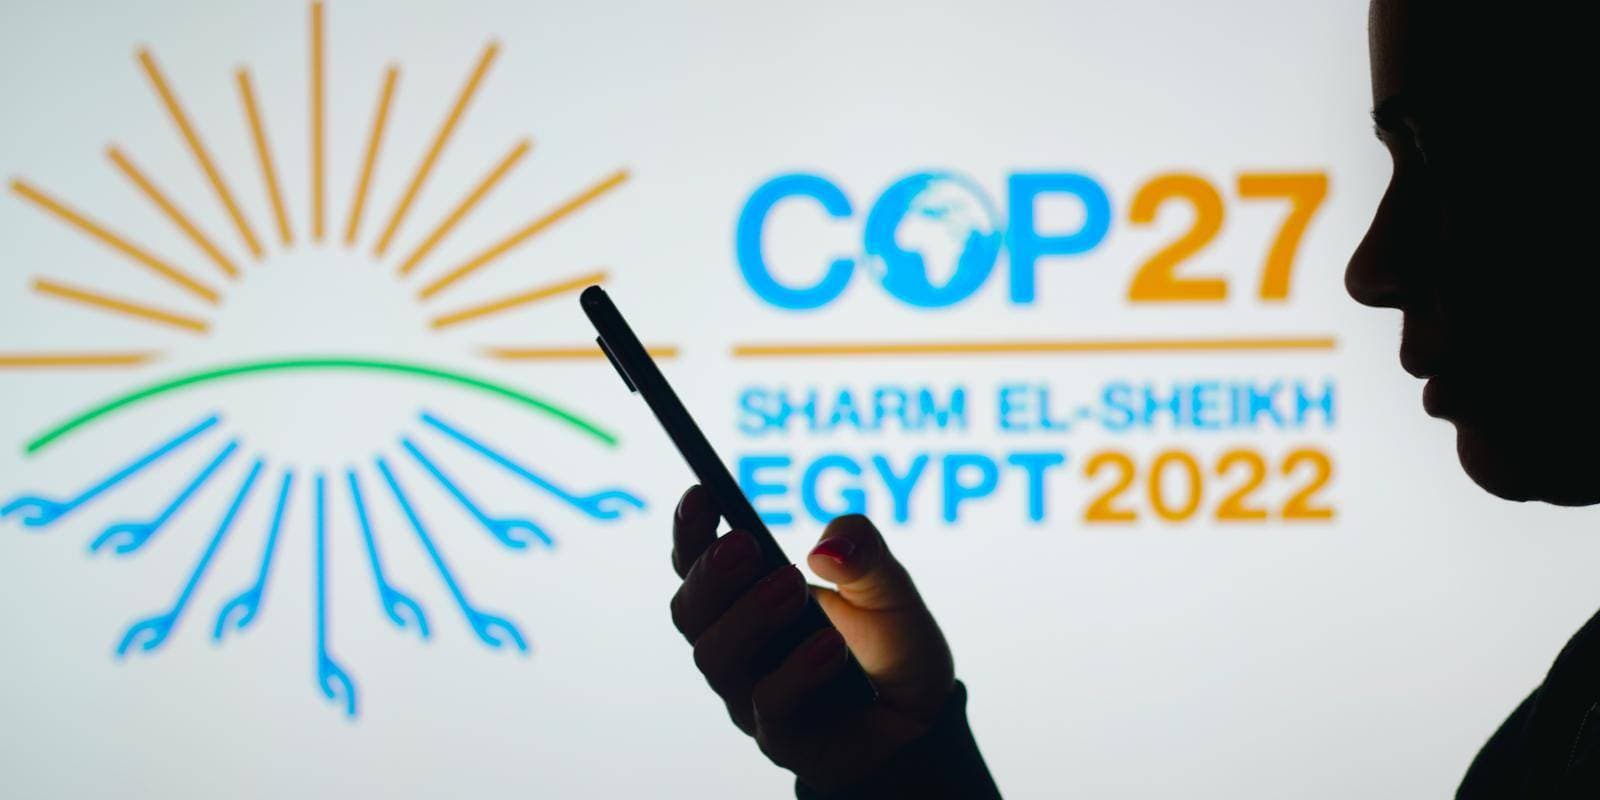 مؤتمر قمة المناخ في شرم الشيخ 2022 هيفرق معاك في ايه؟